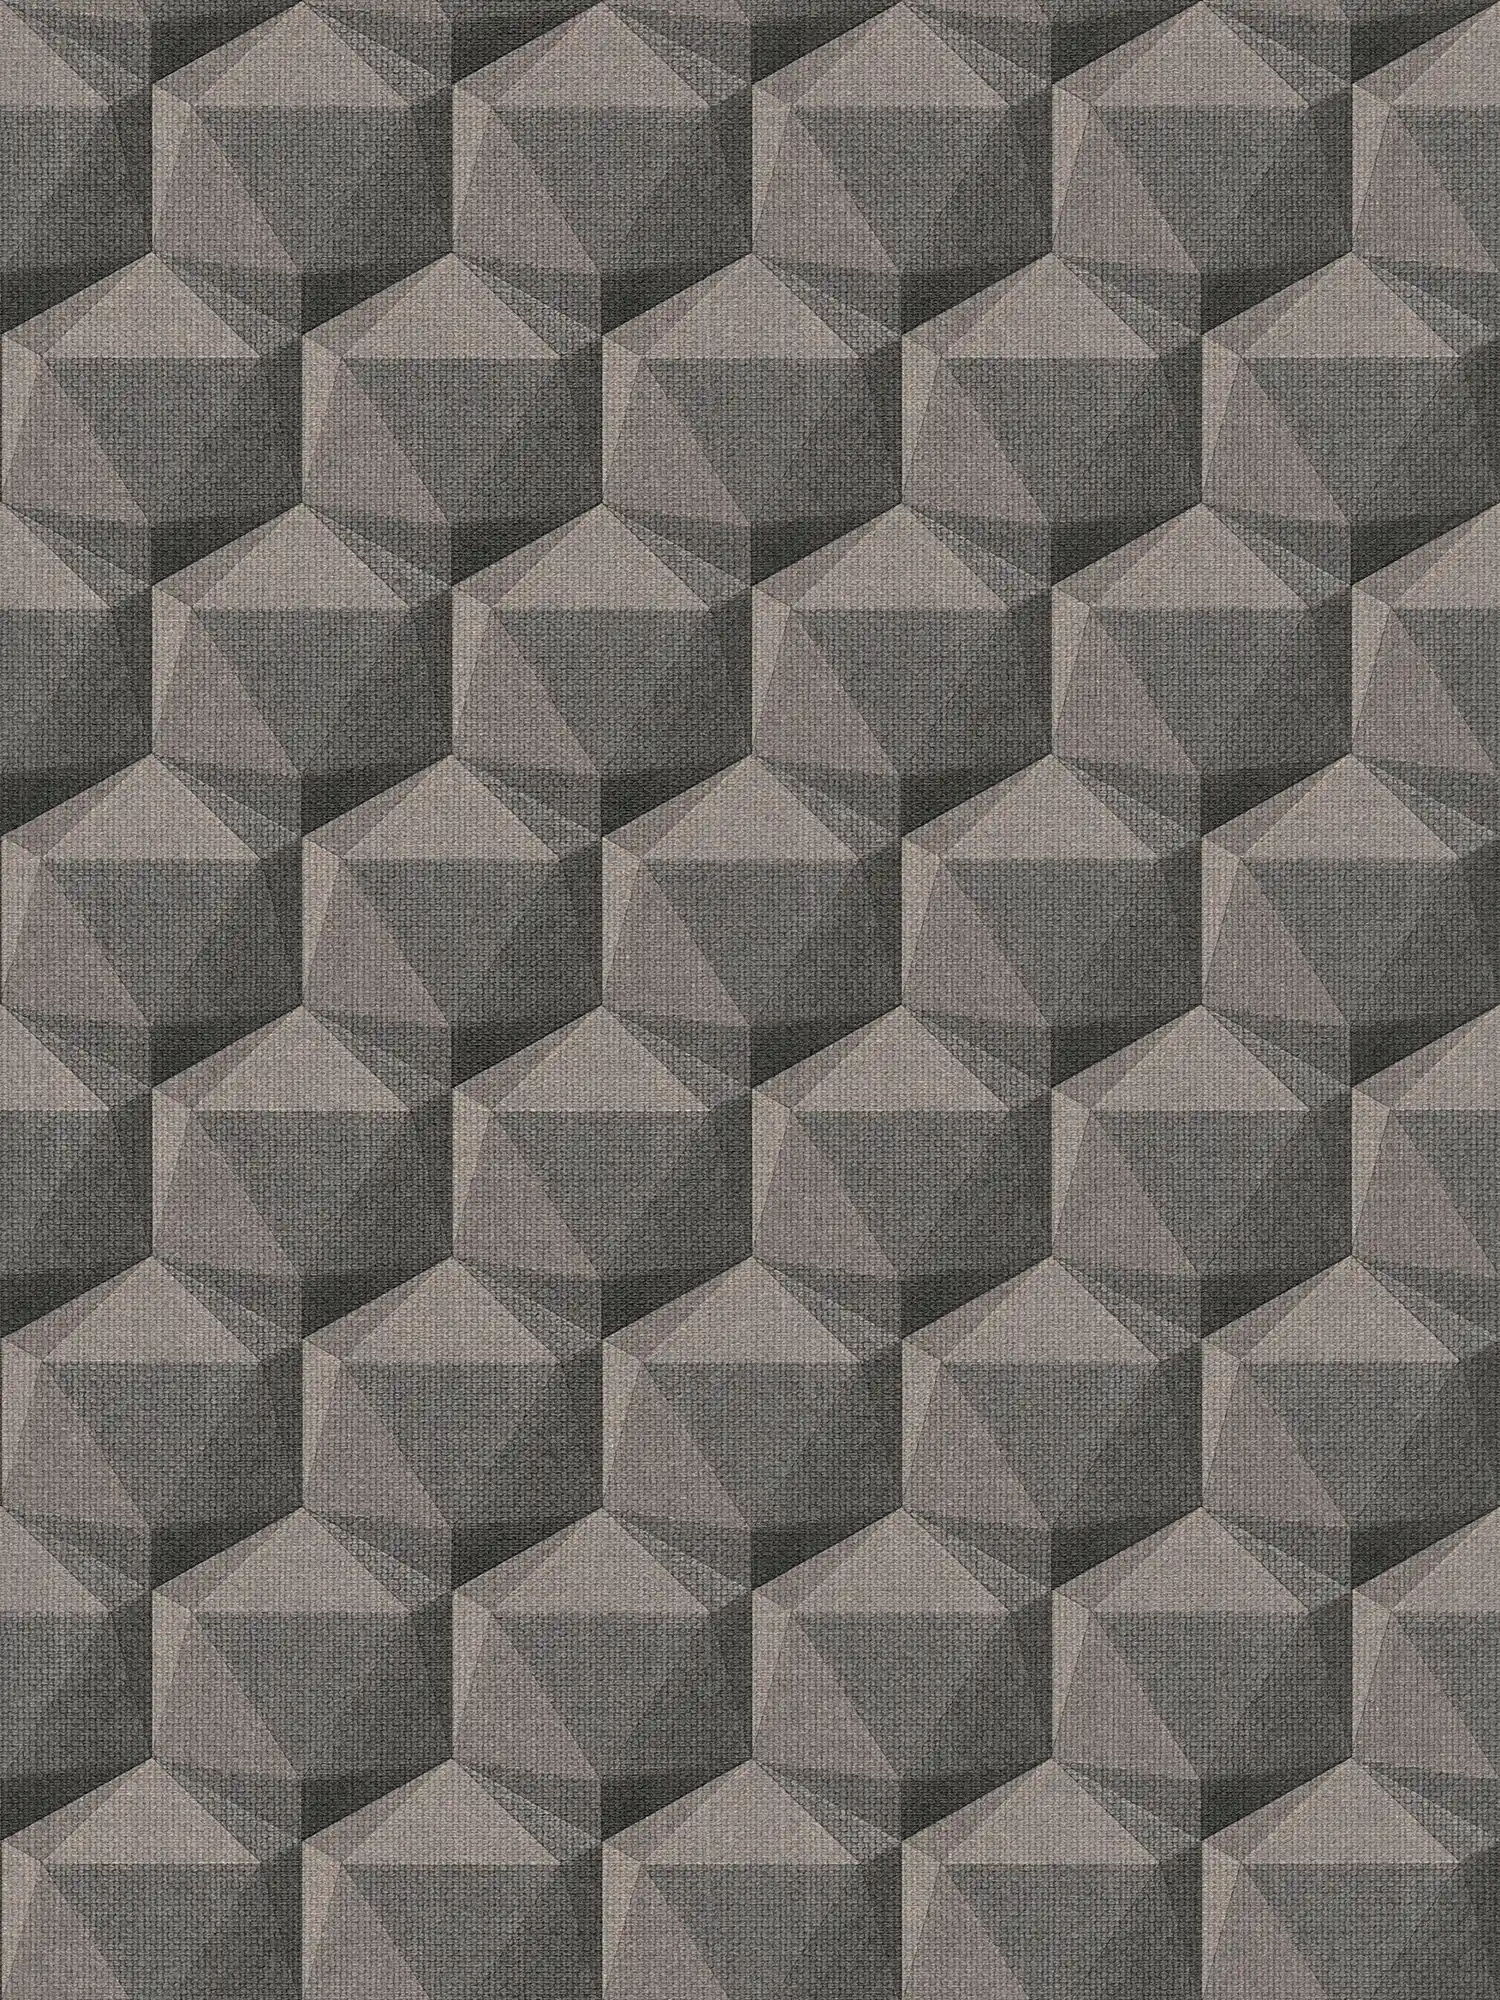 Papier peint graphique 3D optique avec motif polygonal - gris, beige, noir
